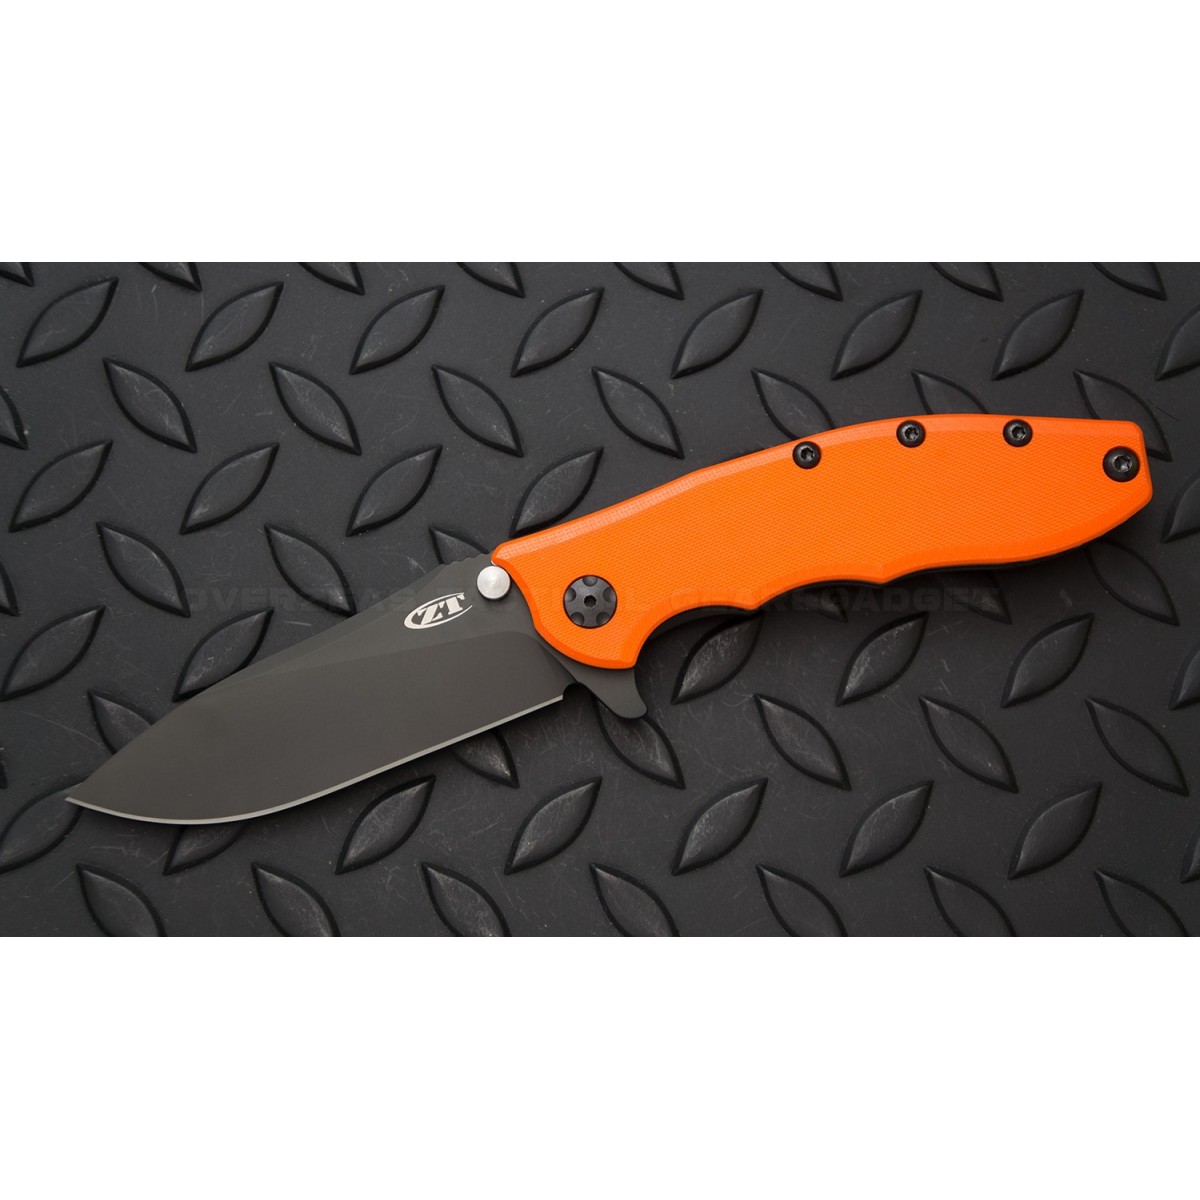 มีดพับ Zero Tolerance 0562ORBLK Hinderer Slicer Knife Orange G-10 (3.5" Black) *Sprint Run*